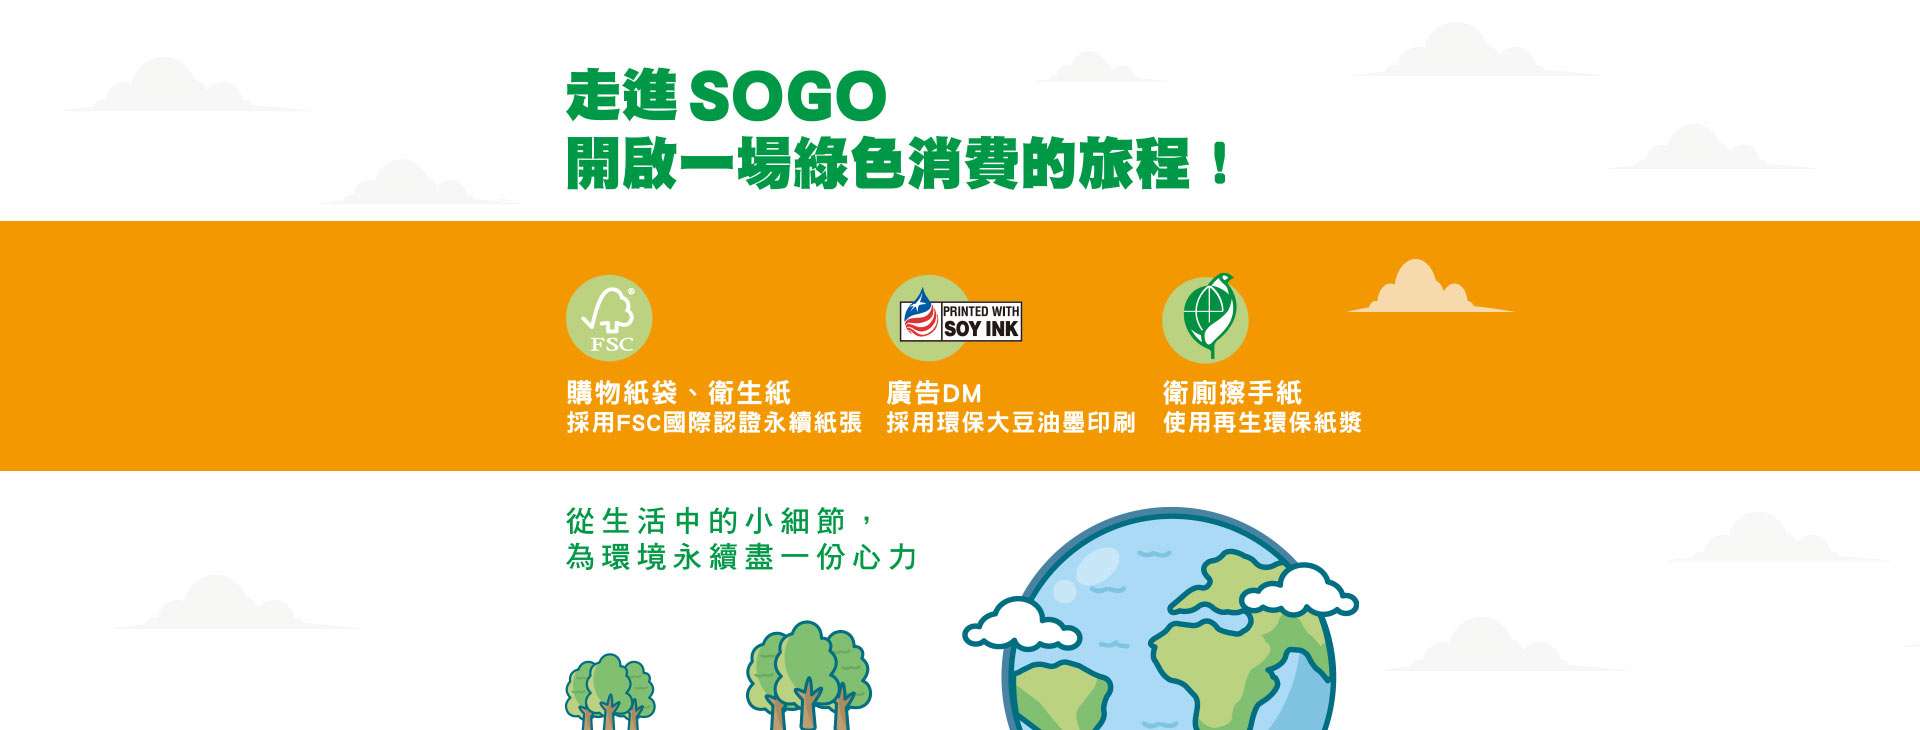 走進SOGO開啟一場綠色消費的旅程!(ESG永續用紙)